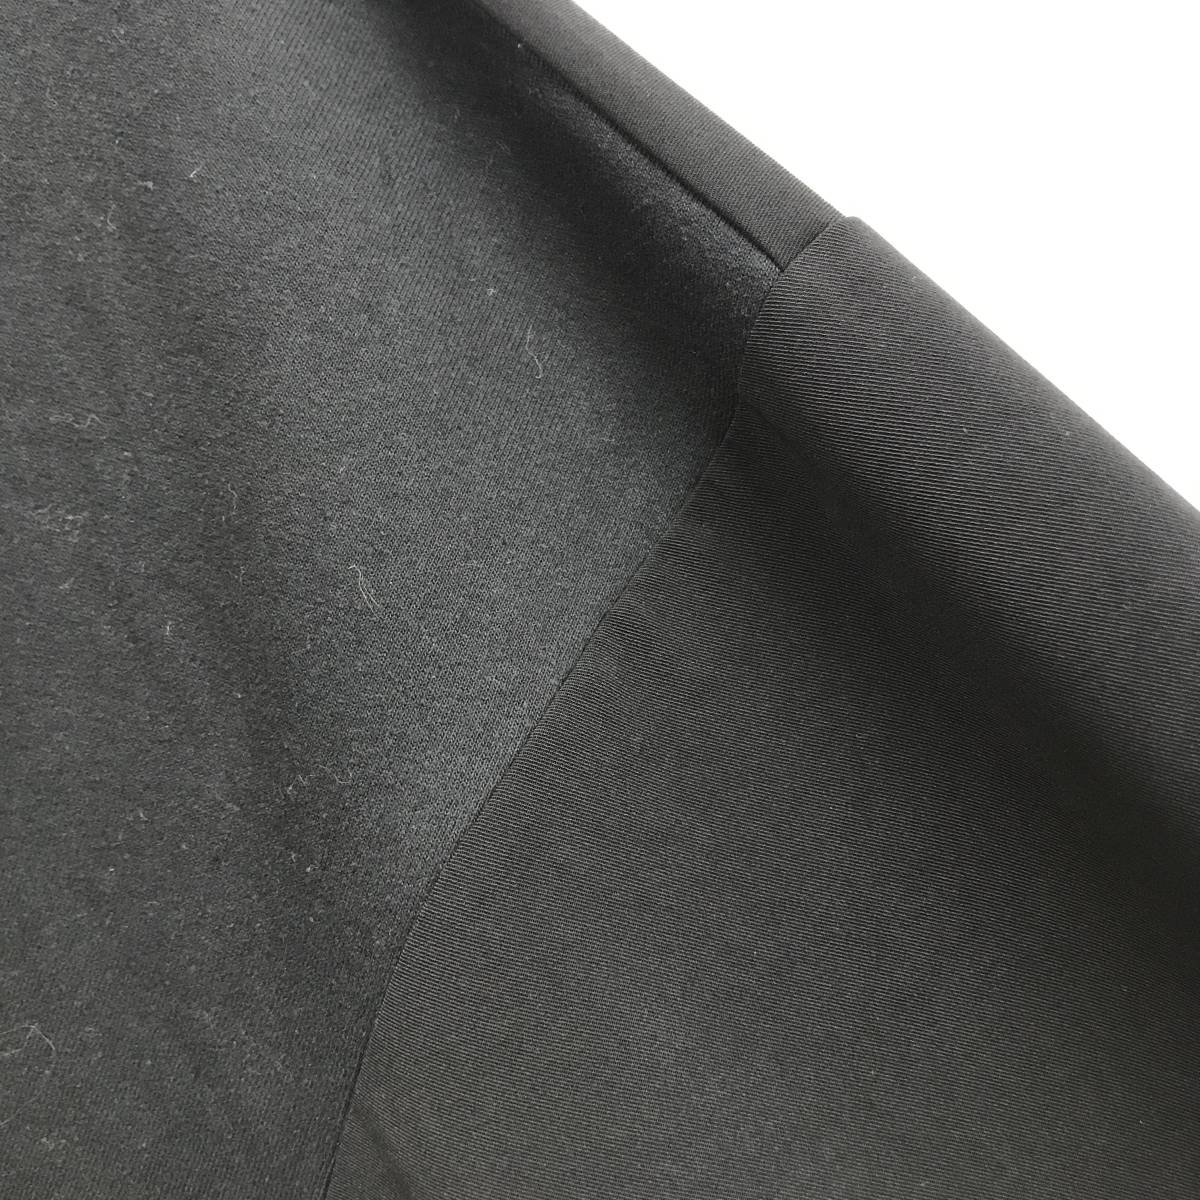 未使用品 ATELANE ロンティ ブラック 長袖 Tシャツ アテレーン ストリート モード トレンドデイリーウェア メンズ トップス レディース 黒